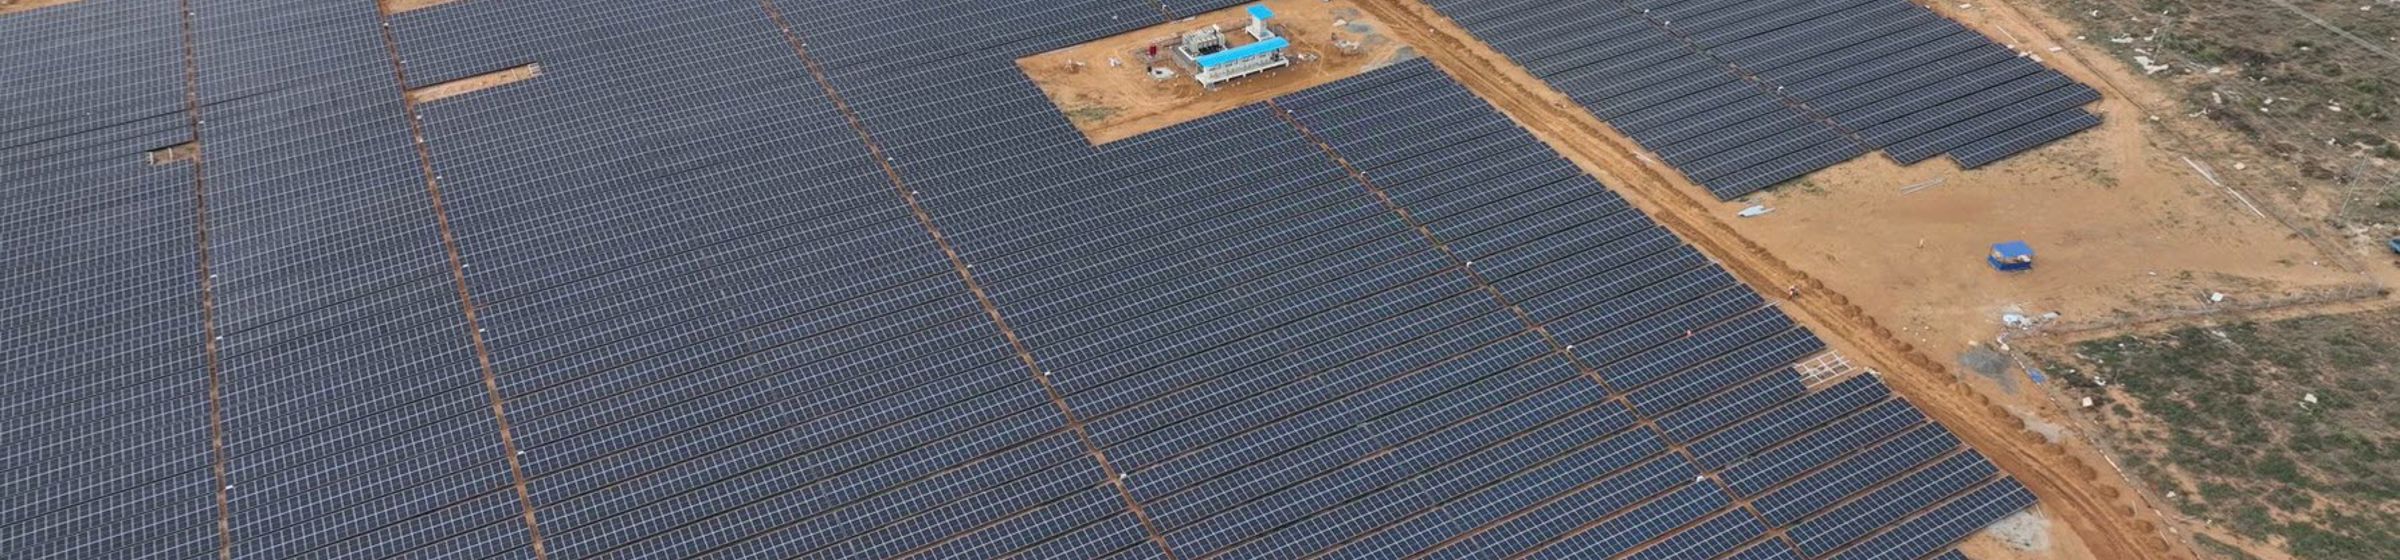 Byggeplass for solkraftverk